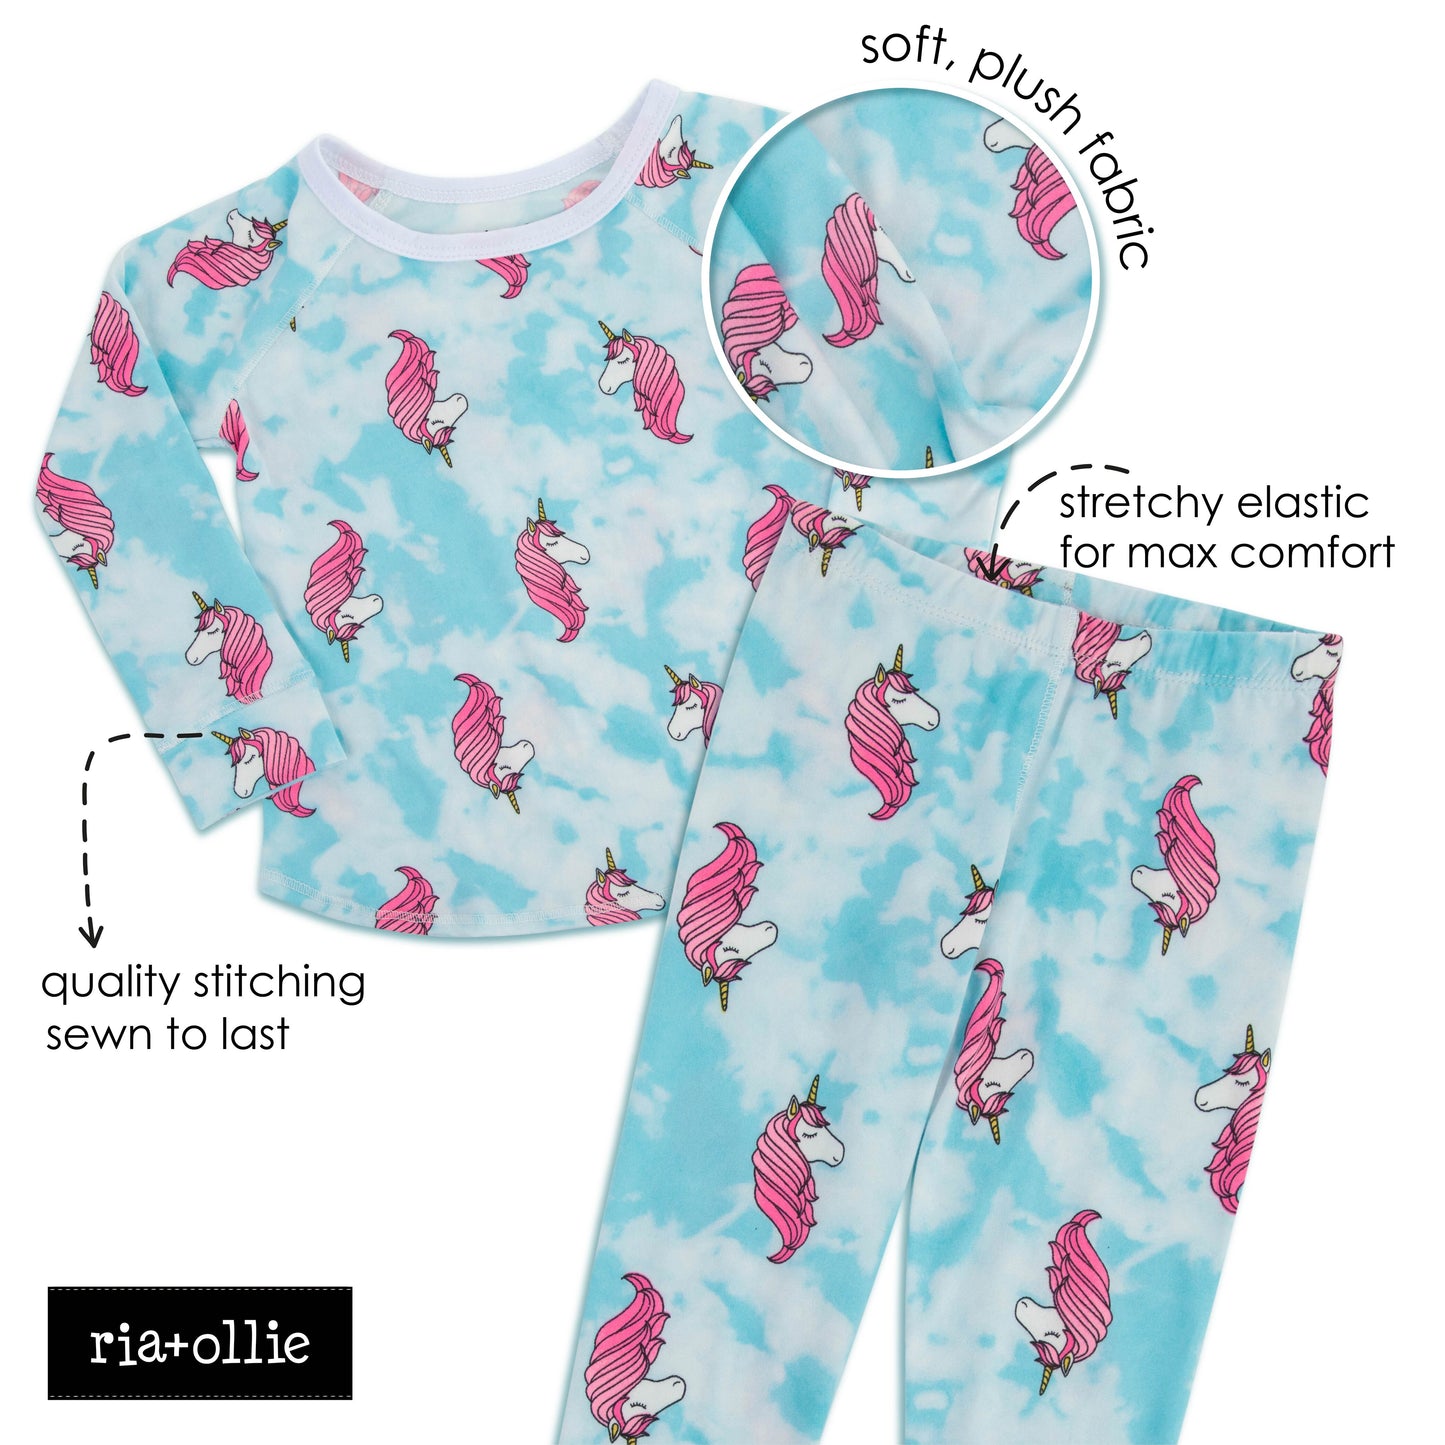 Unicorn Print Pajama Set